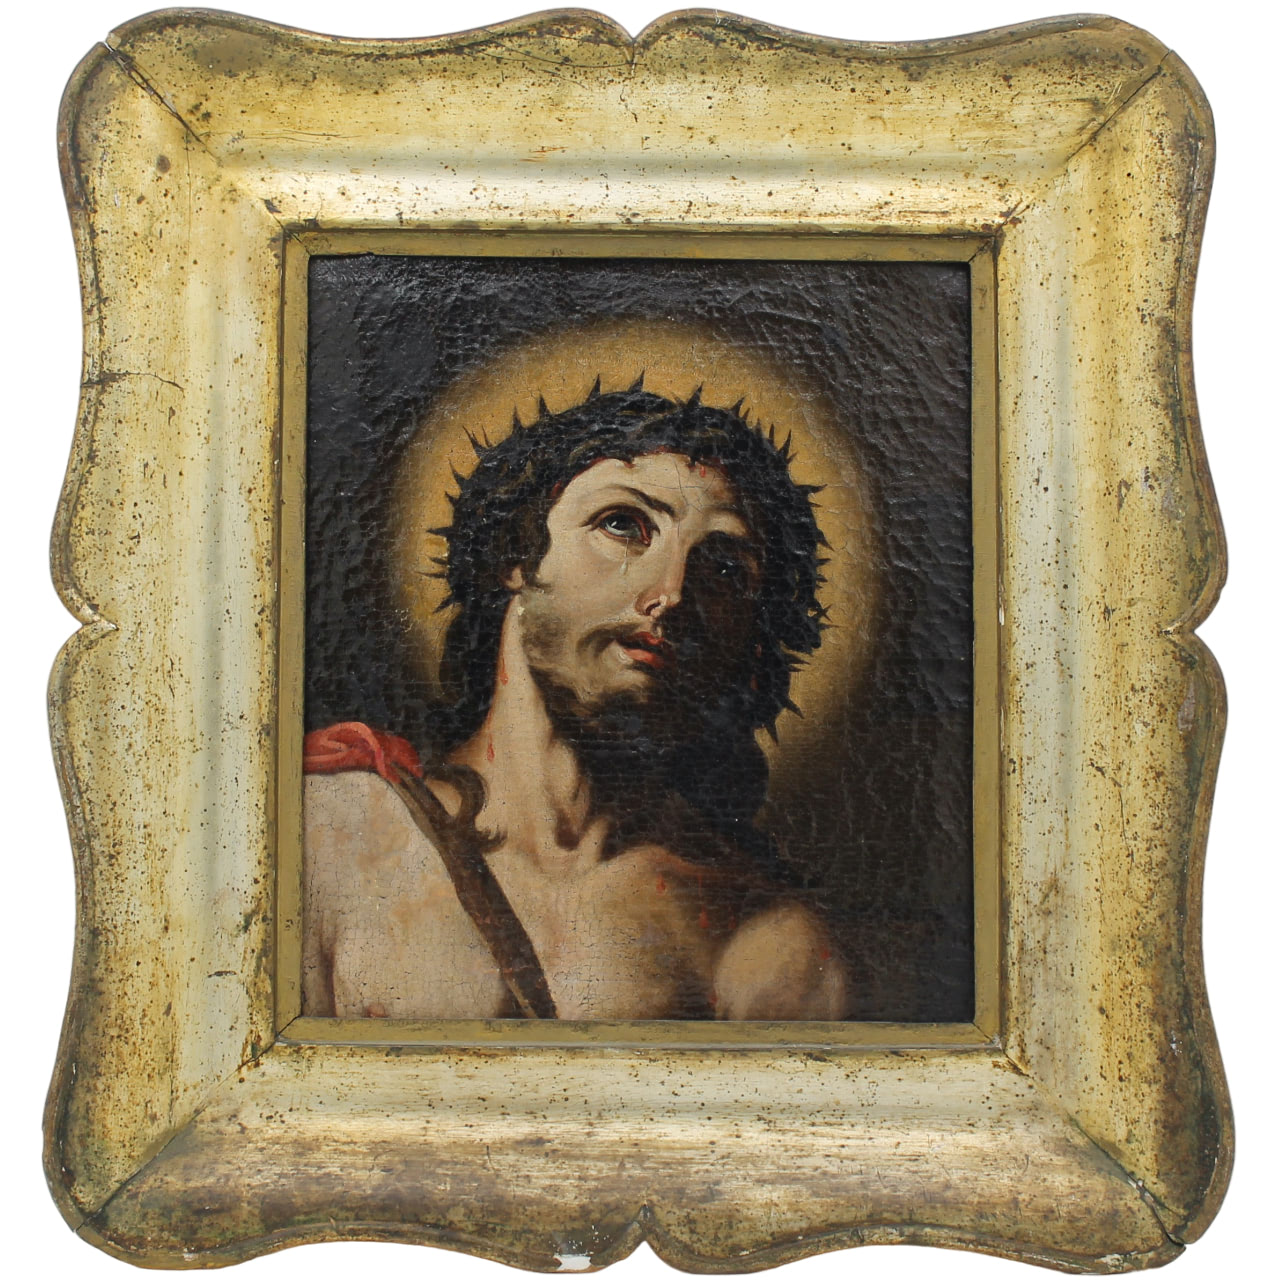 Scuola siciliana del secolo XVIII "Figura di Cristo" - Sicilian school of the eighteenth century "Figure of Christ"